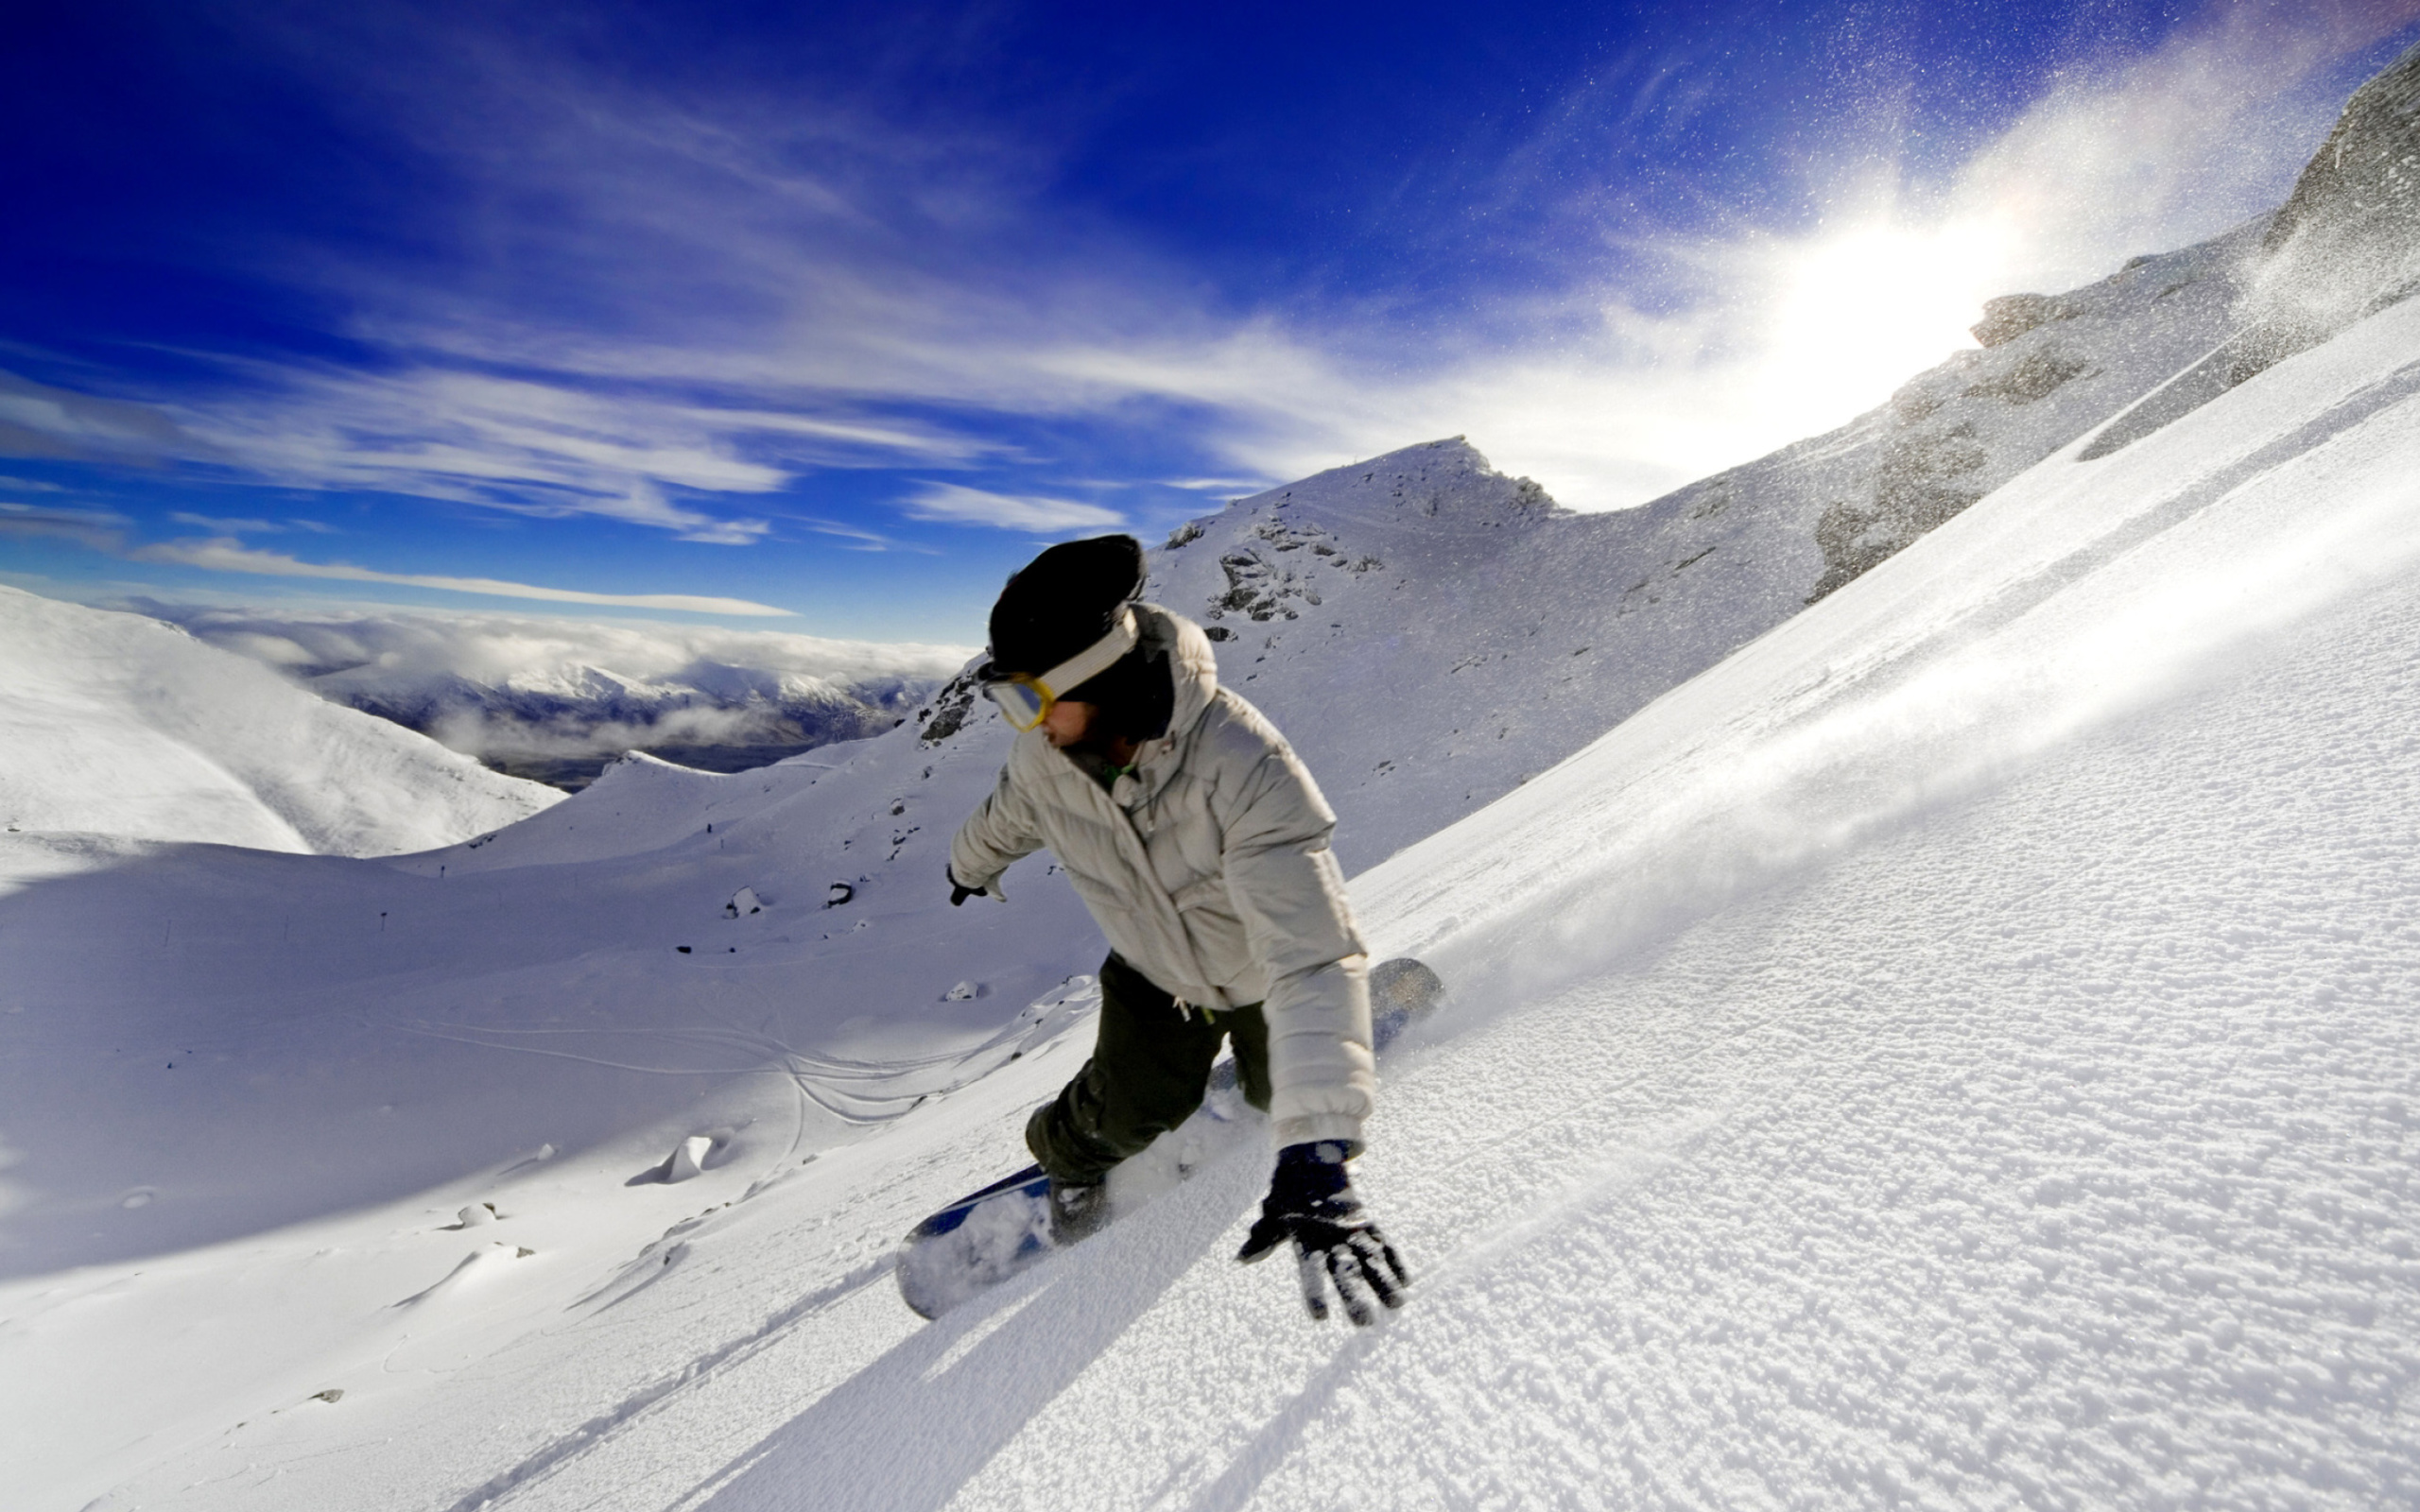 Outdoor activities as Snowboarding screenshot #1 2560x1600